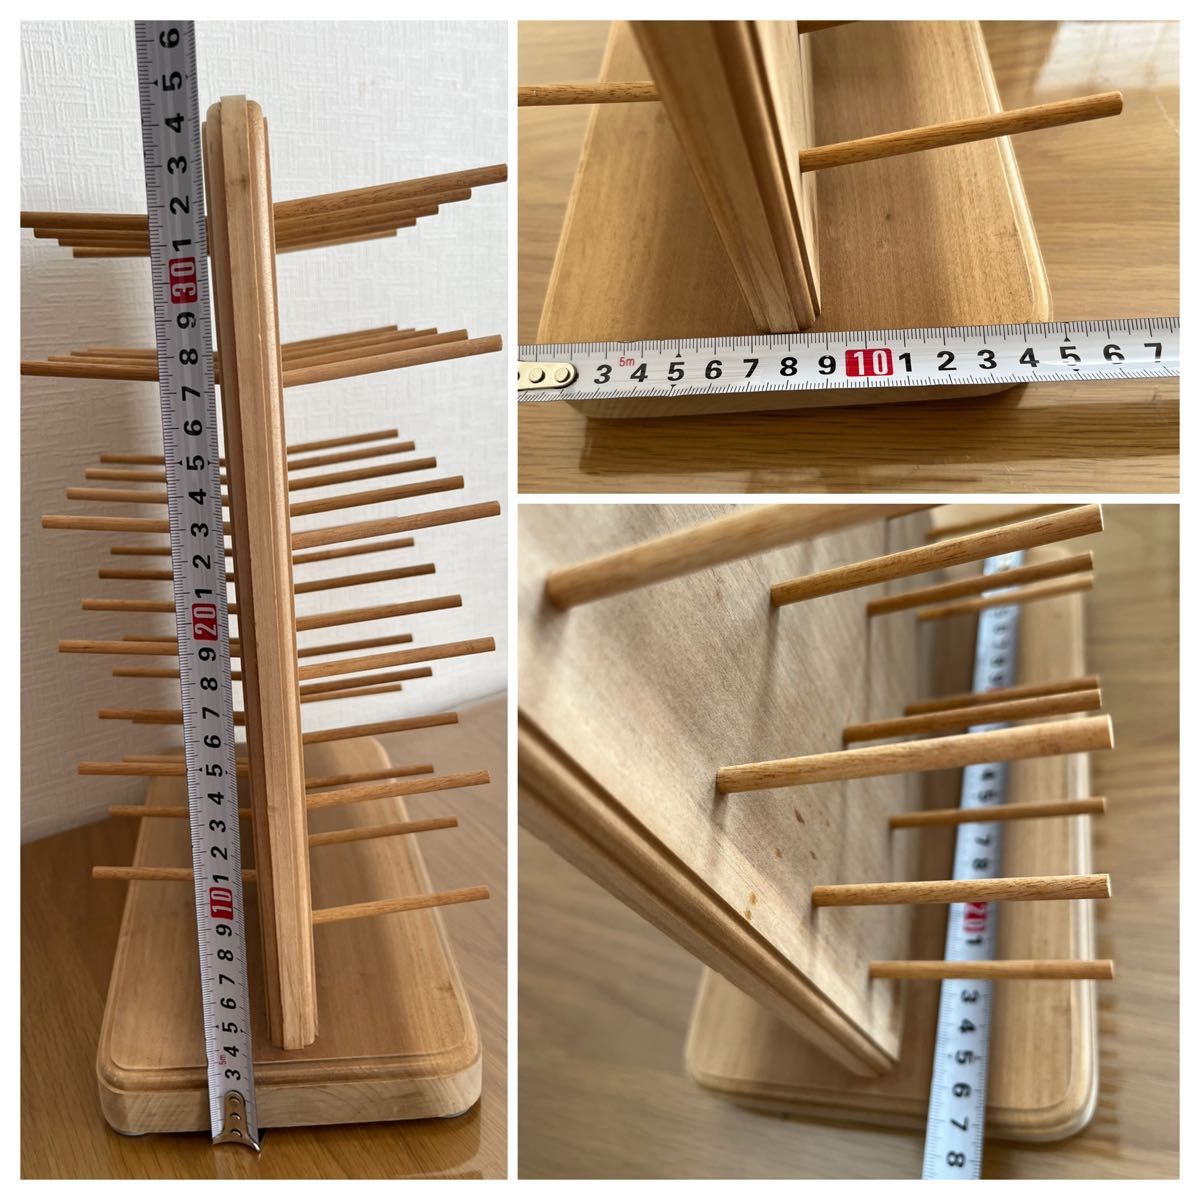 【最終価格】 Handmade作家さん作品木製糸巻きスタンド